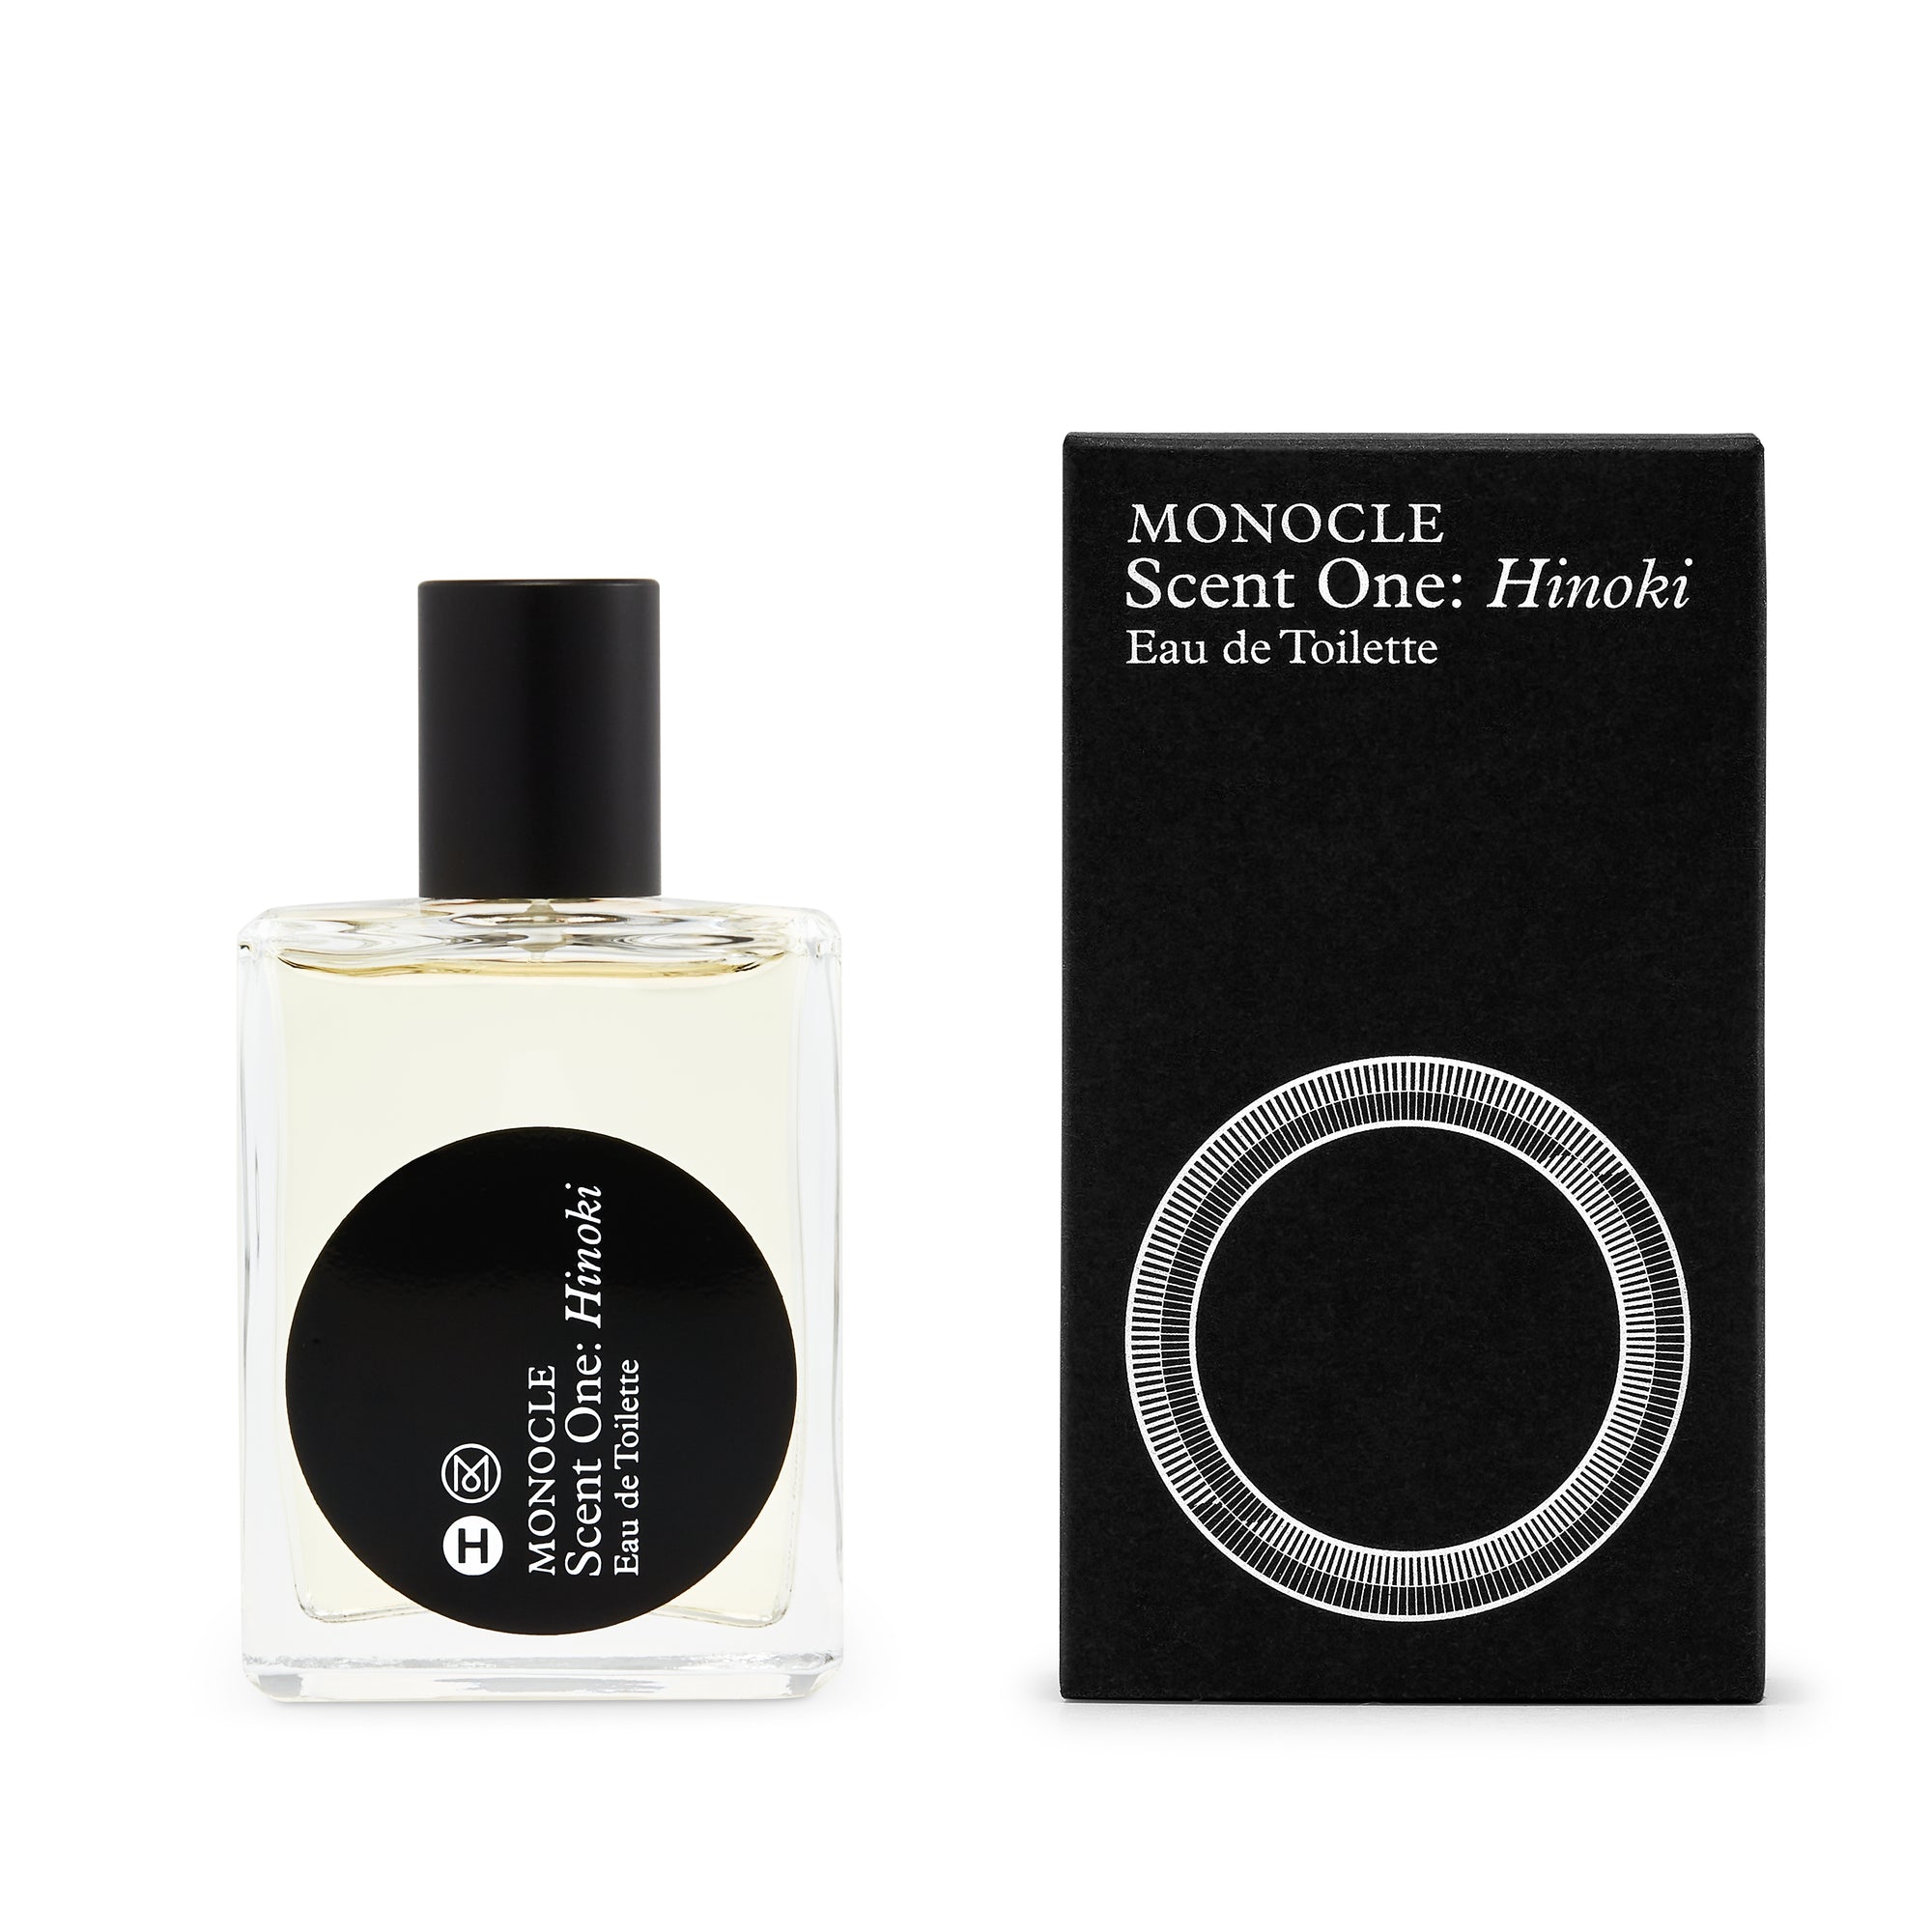 CDG Parfum - Monocle Scent One Hinoki Eau de Toilette - (50ml natural spray) view 2